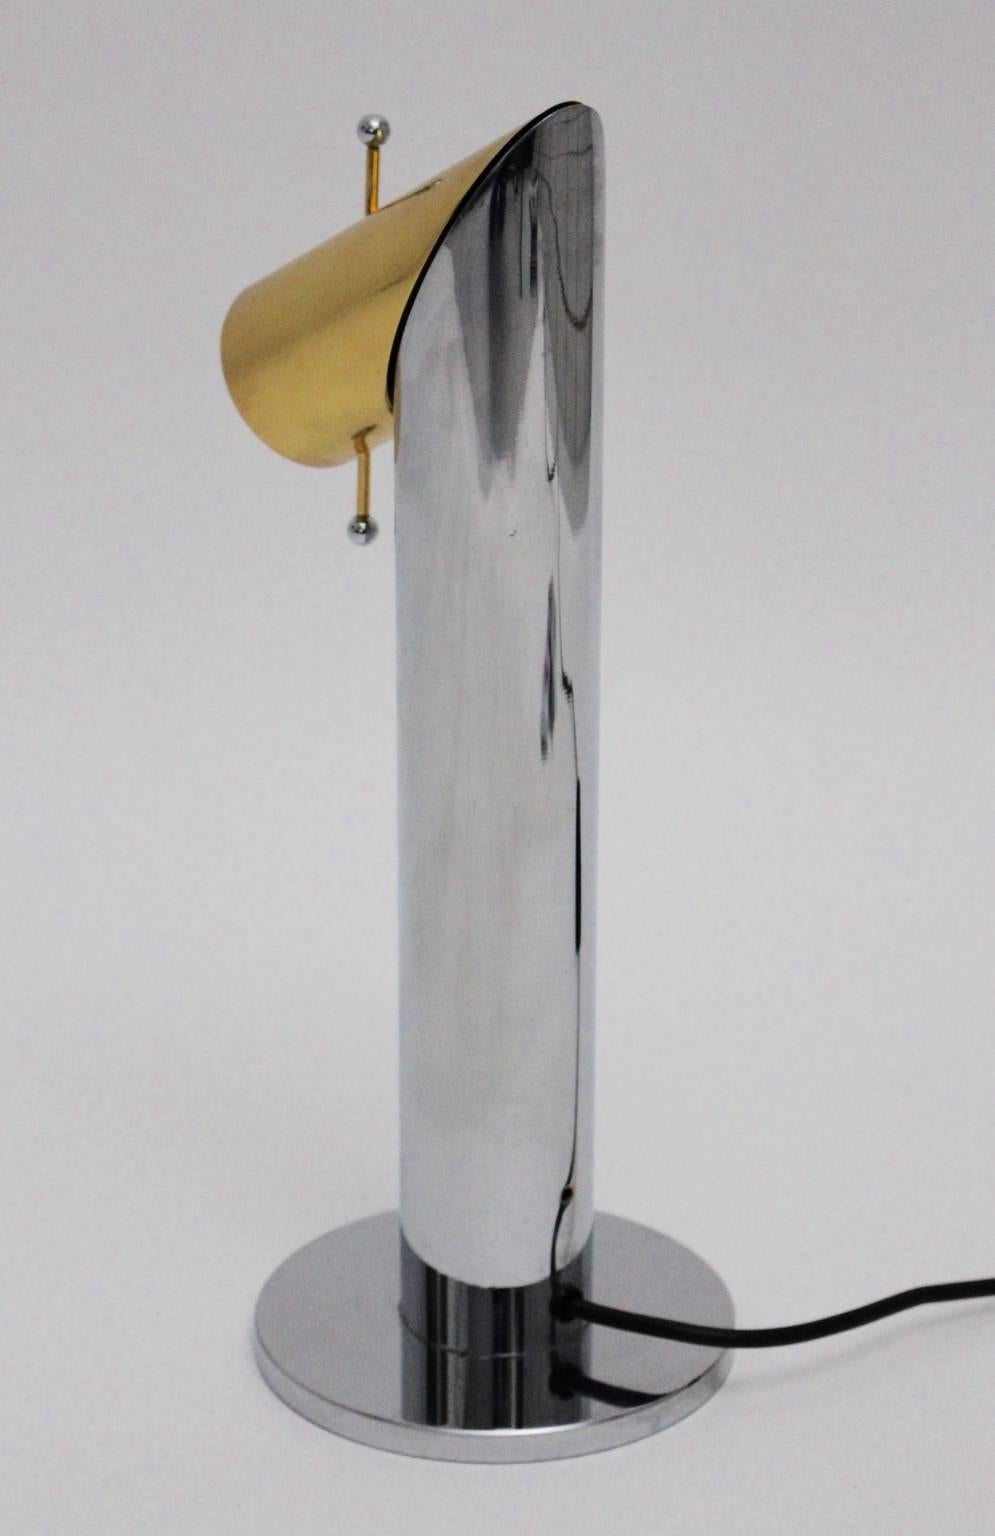 Lampe de table moderne du milieu du siècle dernier, attribuée à Nanda Vigo pour Arredoluce, Italie, vers 1970.
La tête est rotative et réglable et la lumière est graduable.
La lampe de table vintage en métal chromé et laiton en très bon état.
Une